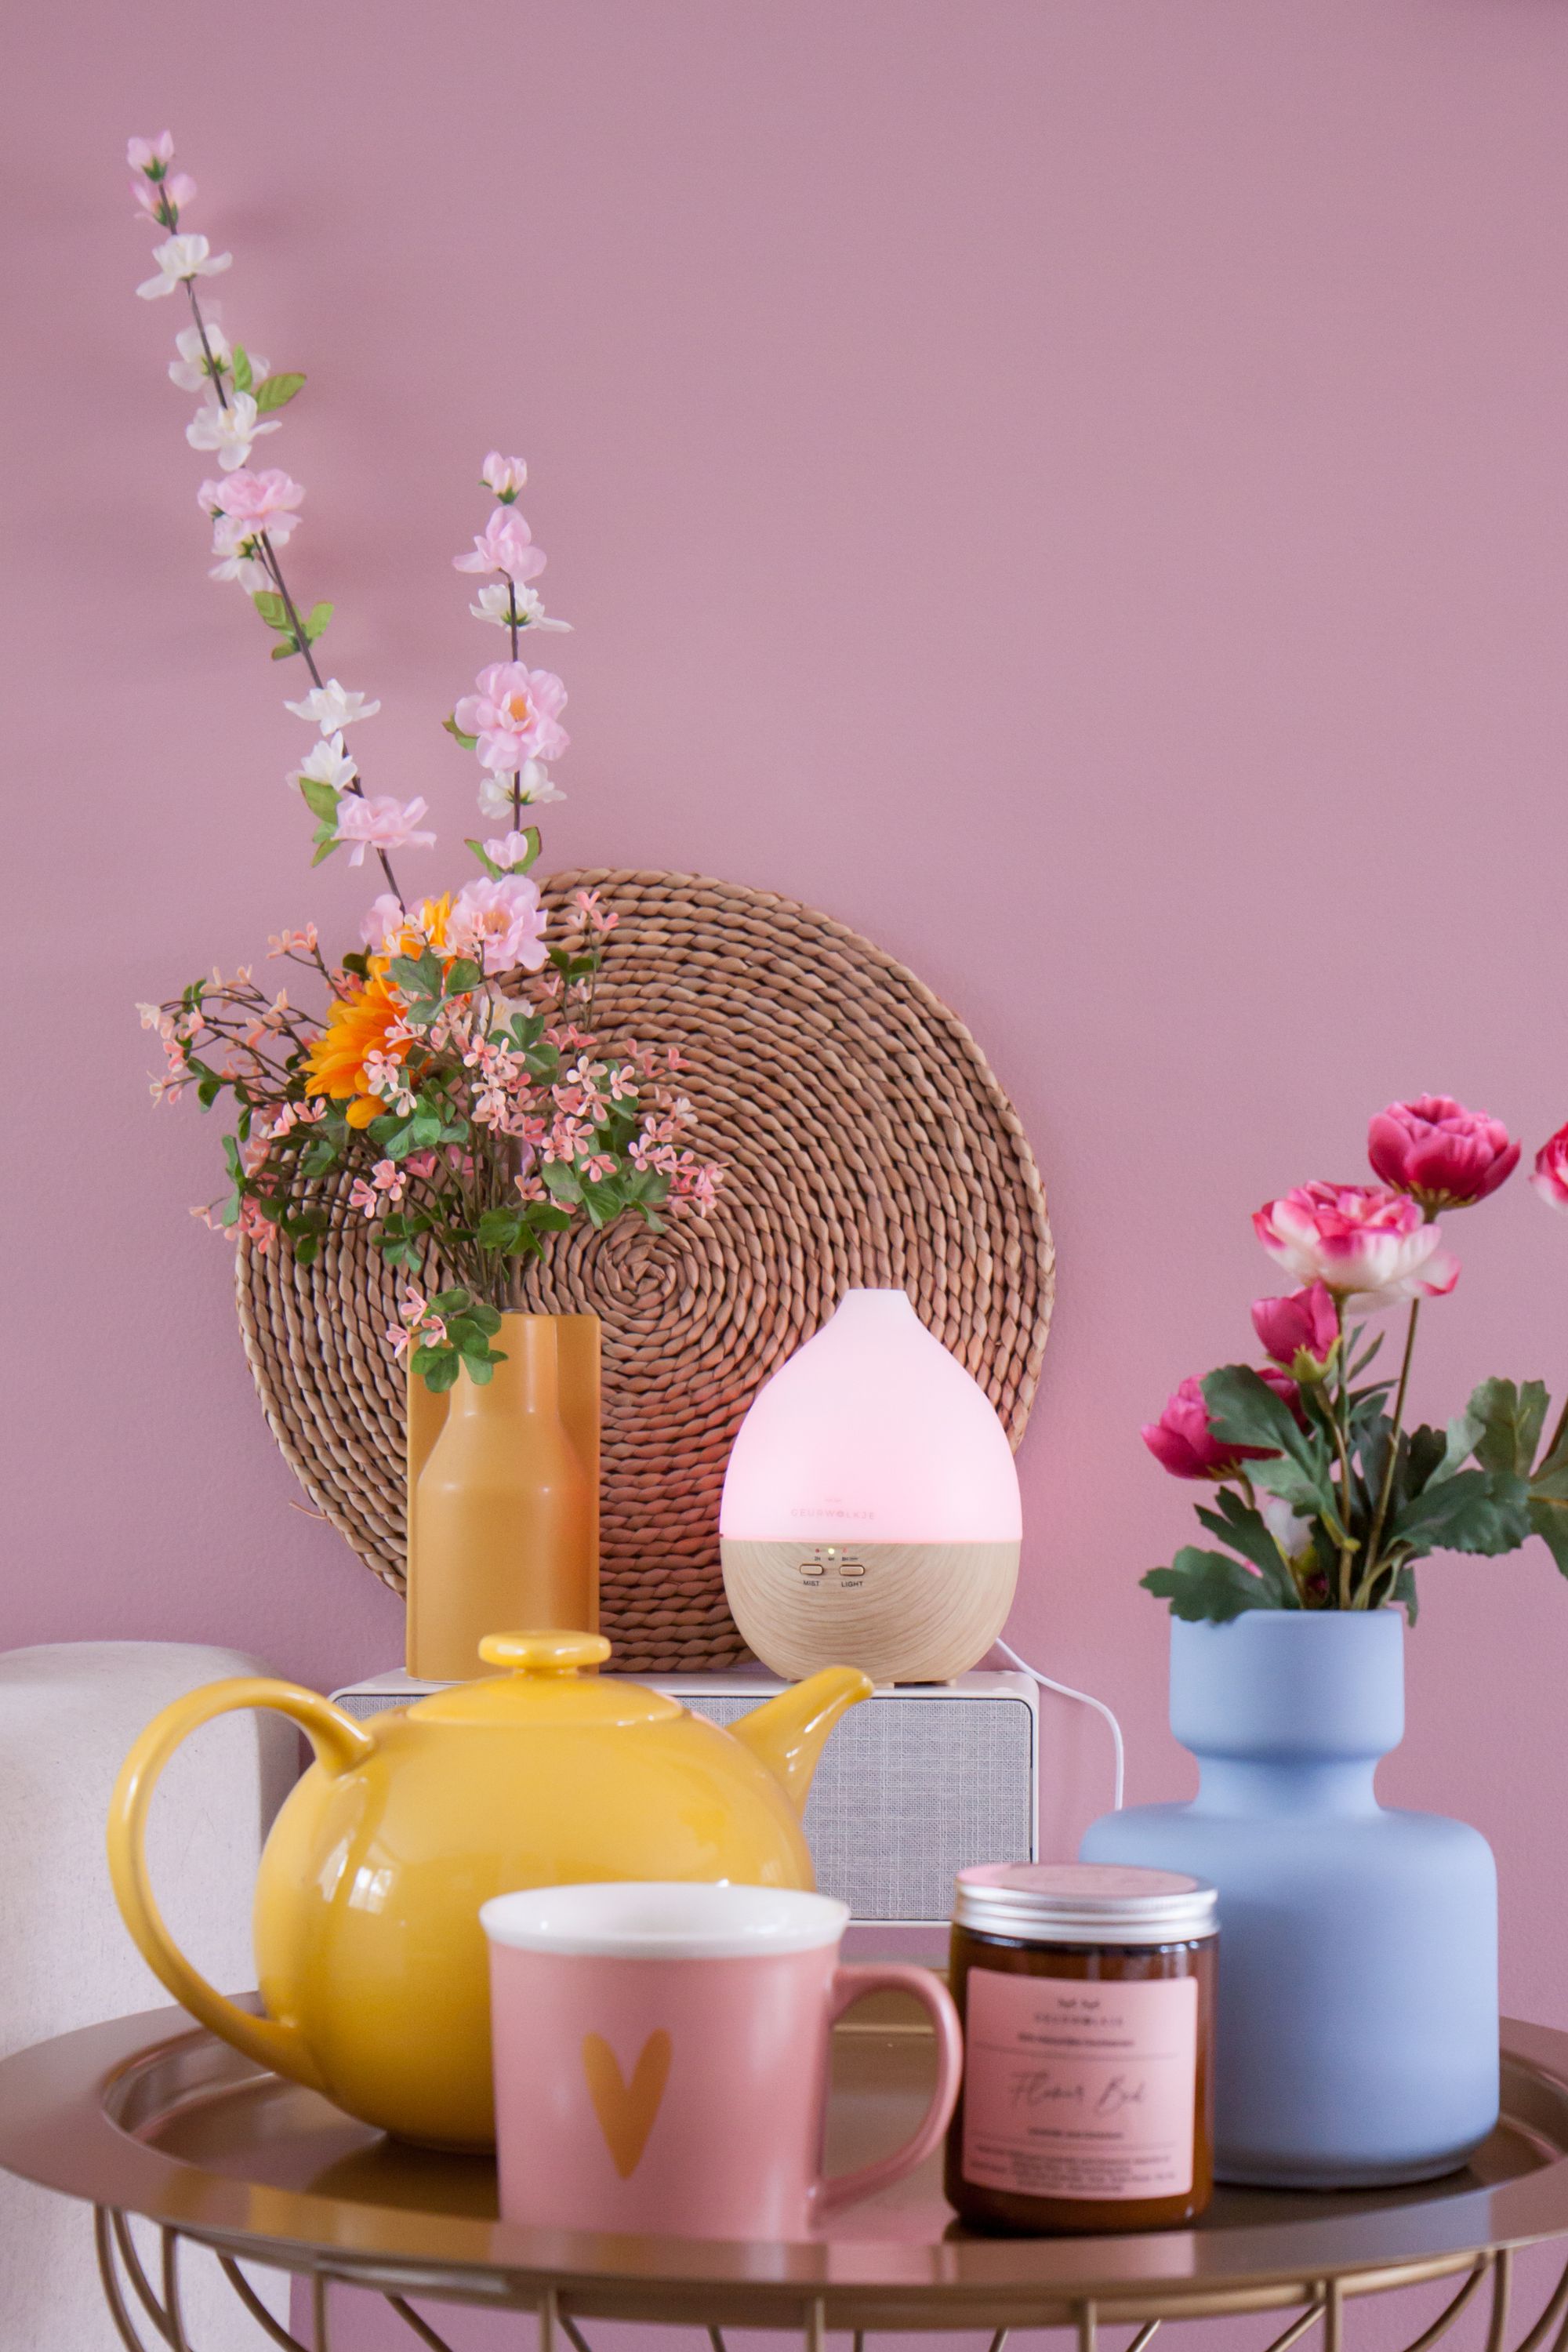 Sfeerplaatje met een geurkaars, aroma diffuser, bloemen en thee.